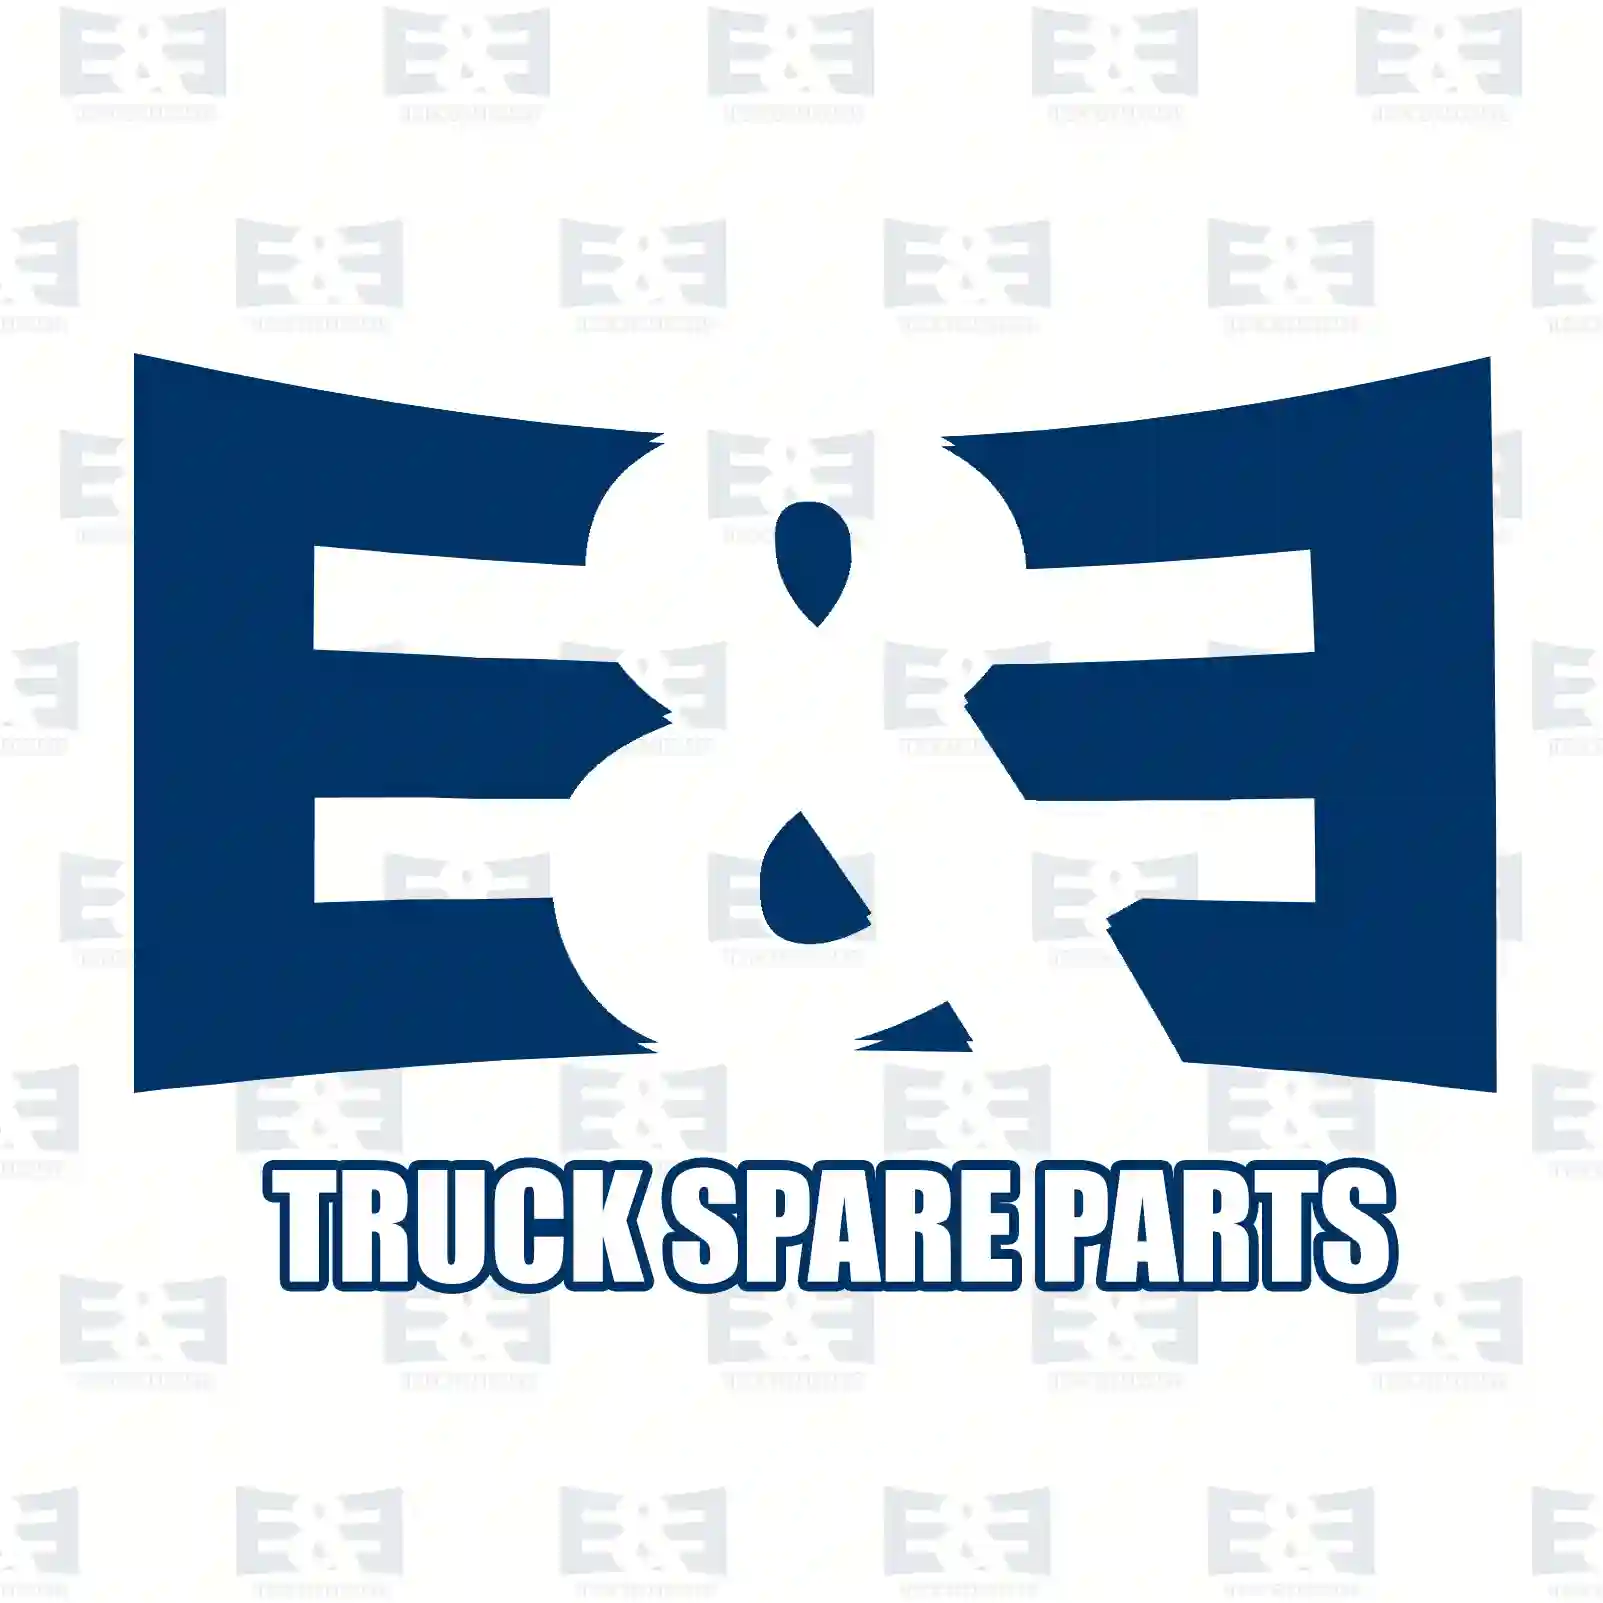 Brake cylinder, 2E2295867, 0054207724, 0054208324, 0084200624, , ||  2E2295867 E&E Truck Spare Parts | Truck Spare Parts, Auotomotive Spare Parts Brake cylinder, 2E2295867, 0054207724, 0054208324, 0084200624, , ||  2E2295867 E&E Truck Spare Parts | Truck Spare Parts, Auotomotive Spare Parts